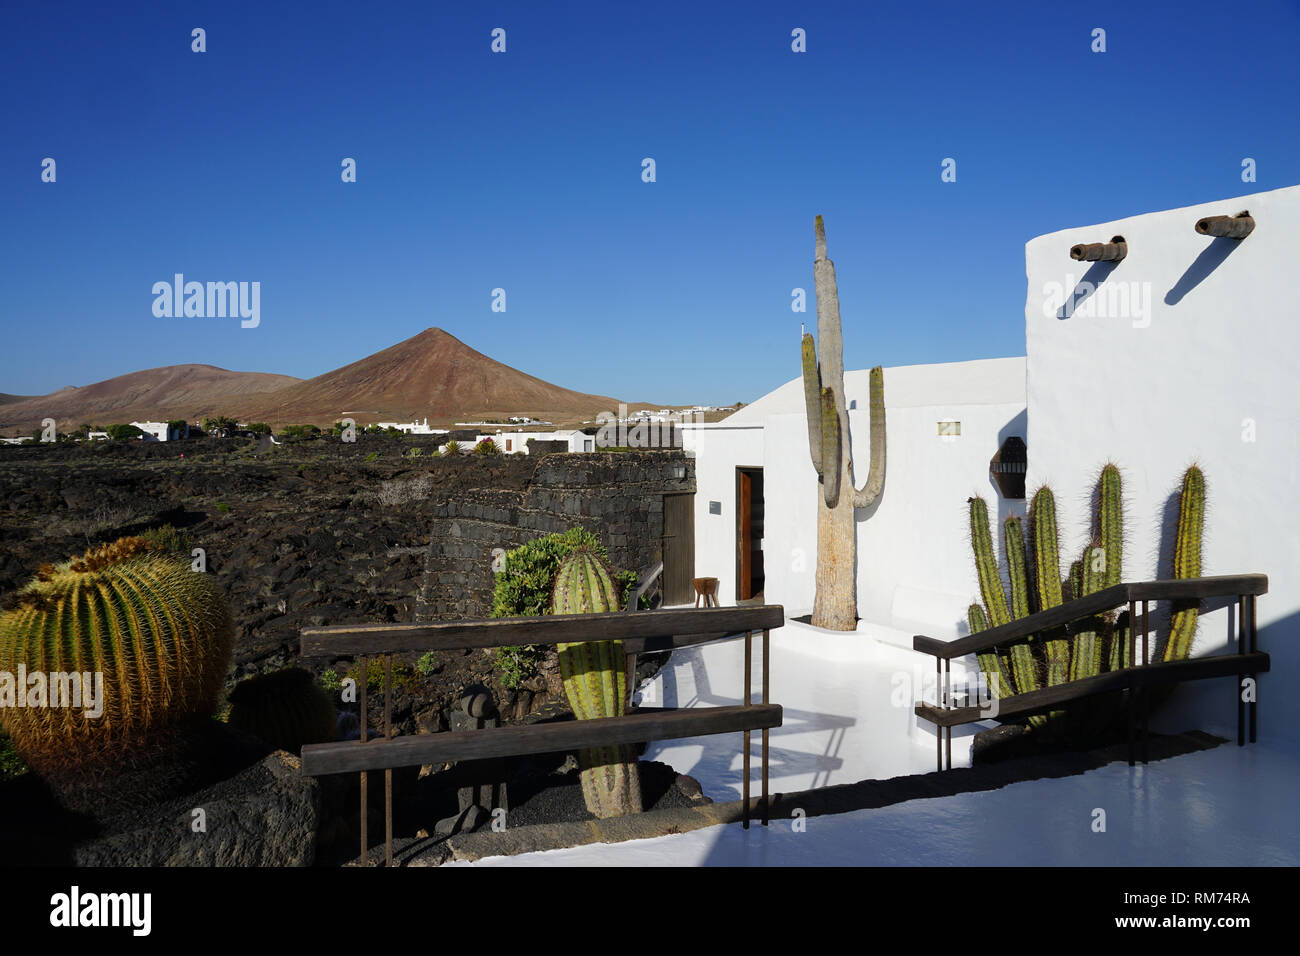 Blick von der Außenterrasse, Vulkanhaus, Garten, Fundación César Manrique, Vulkan und Architektur, museo, Tahiche, Lanzarote, Kanarische isole Foto Stock